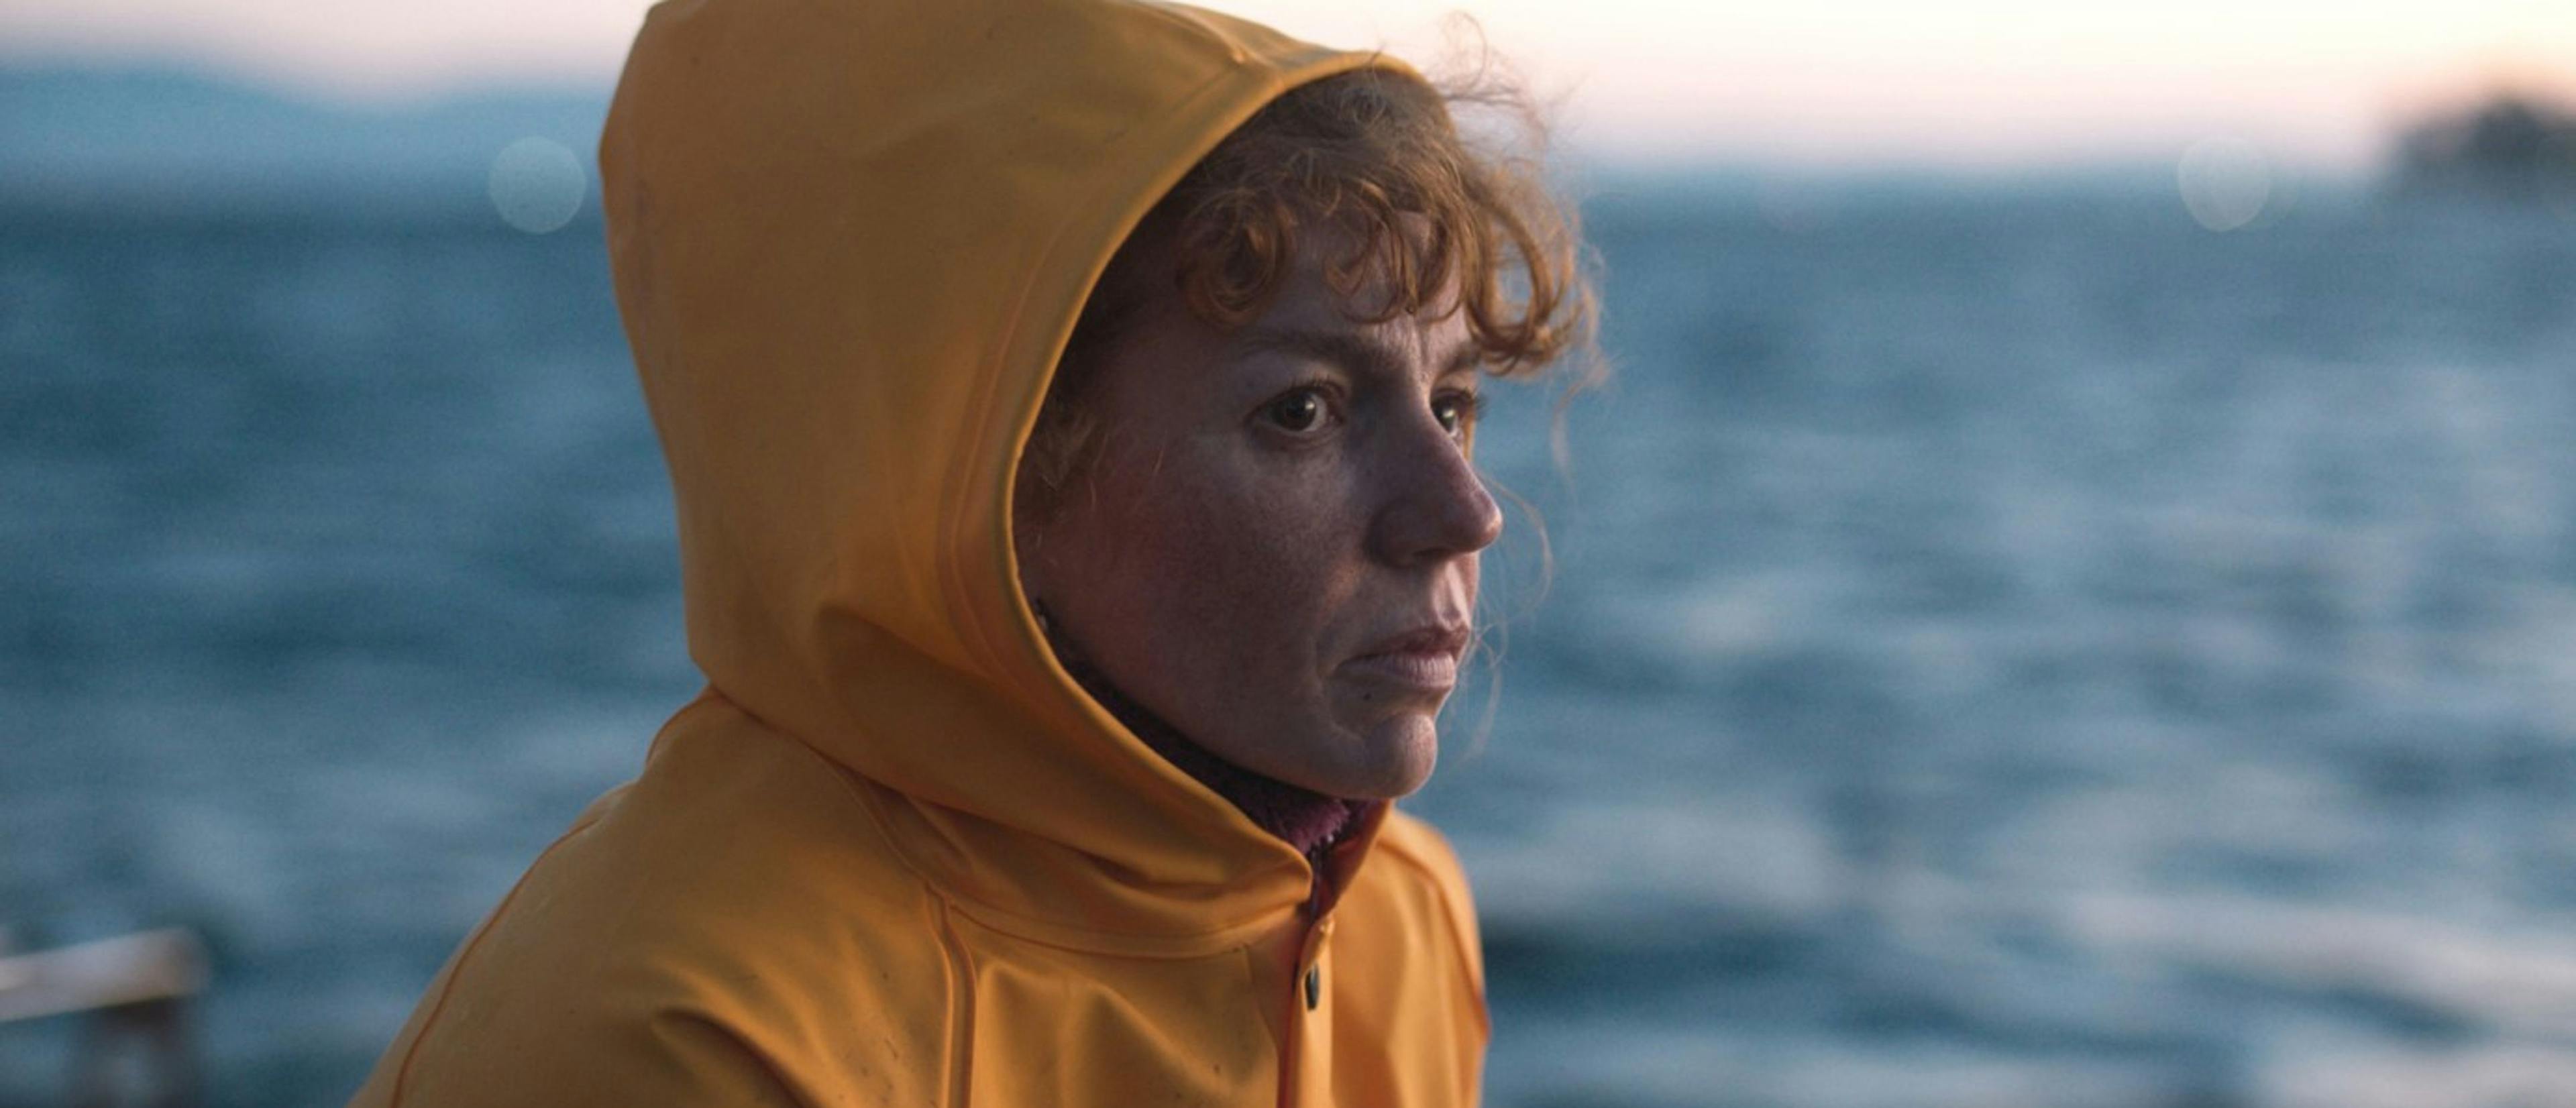 'Matria', el debut de Álvaro Gago, se verá en la sección Panorama de la Berlinale